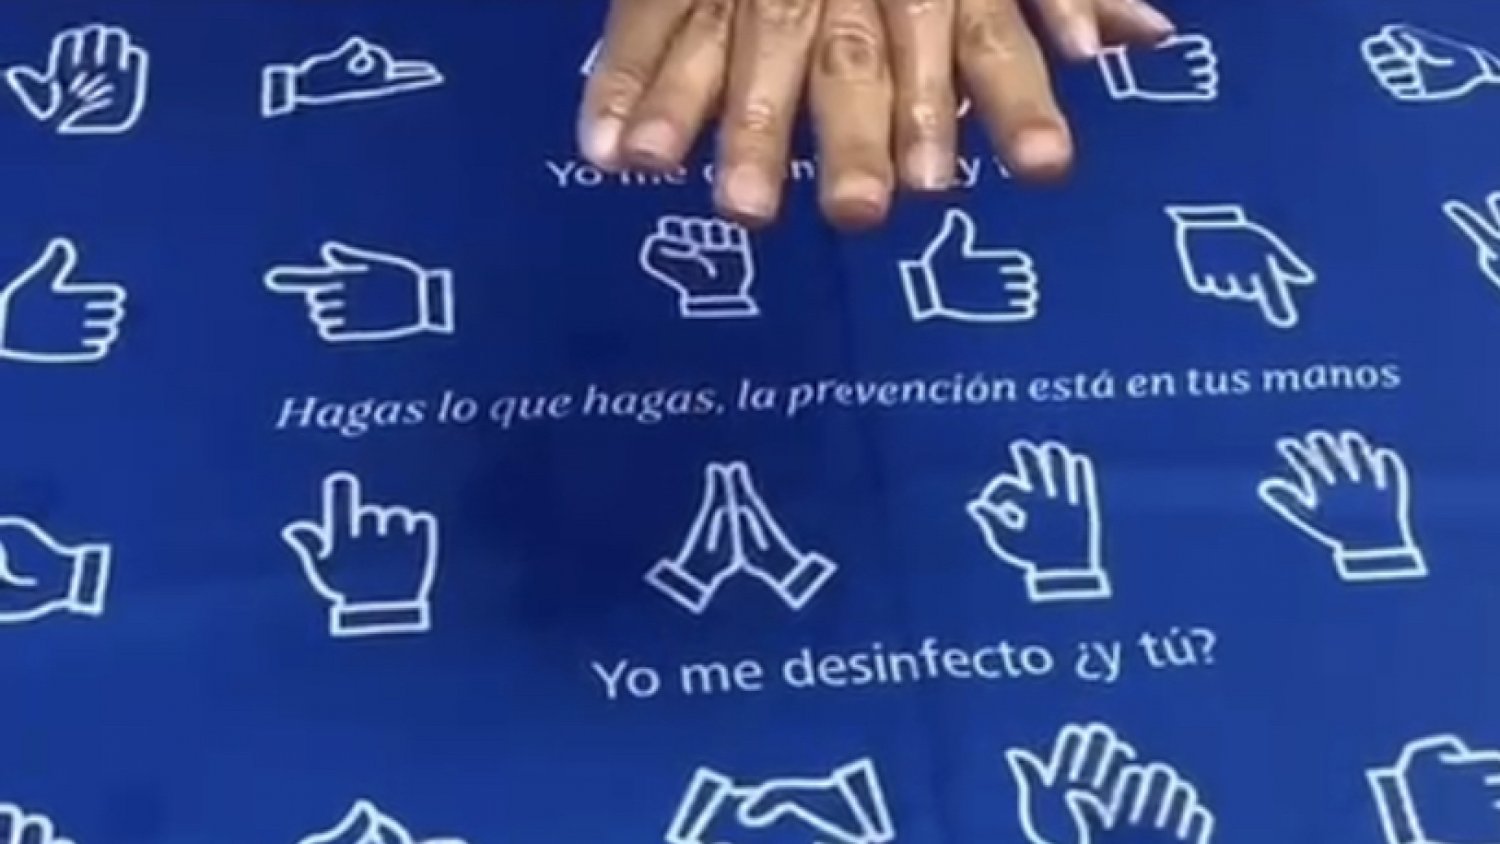 Profesionales del Clínico participan en un video para promocionar la cultura de higiene de manos